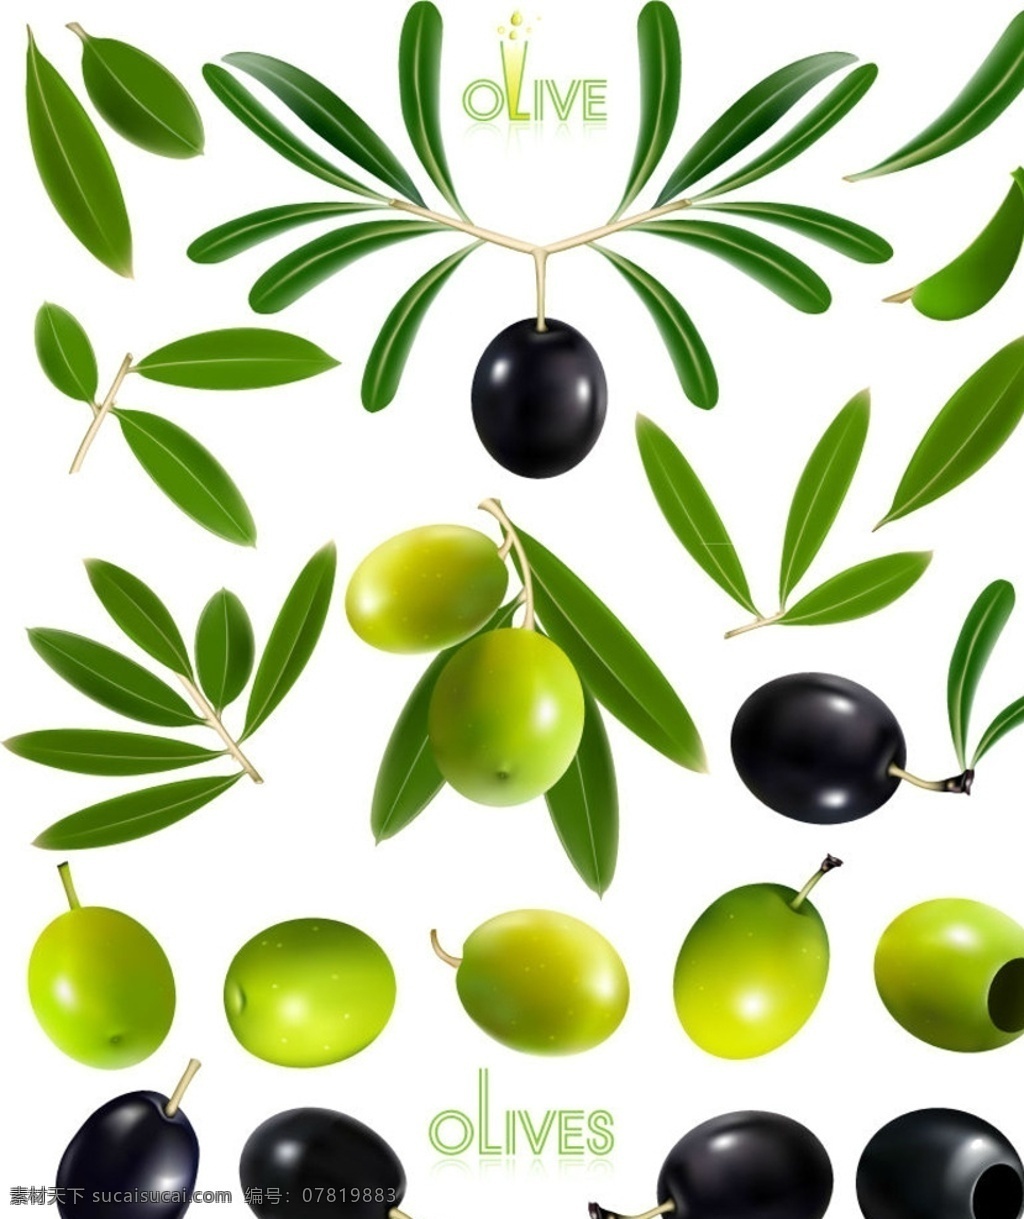 精美 油橄榄 橄榄 矢量 橄榄叶 水果 新鲜 食品果蔬 分层